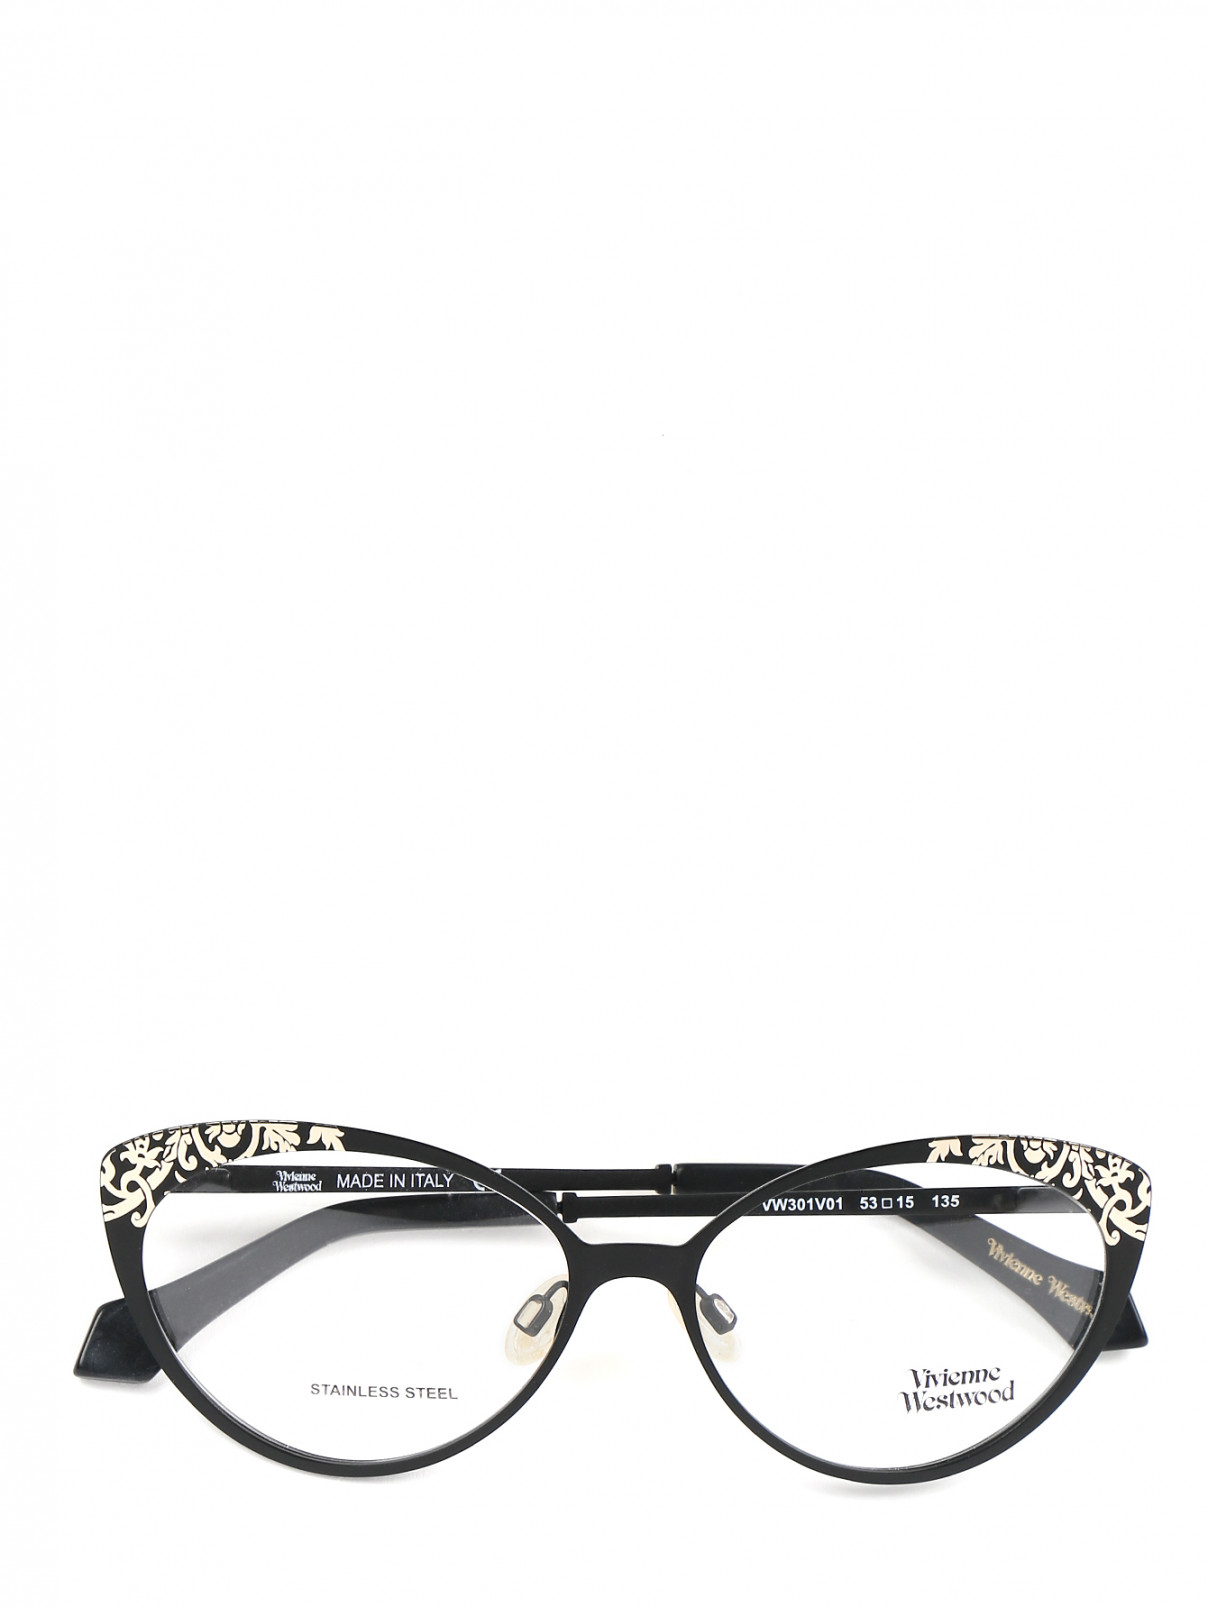 Оправа для очков из пластика с декором Vivienne Westwood  –  Общий вид  – Цвет:  Черный